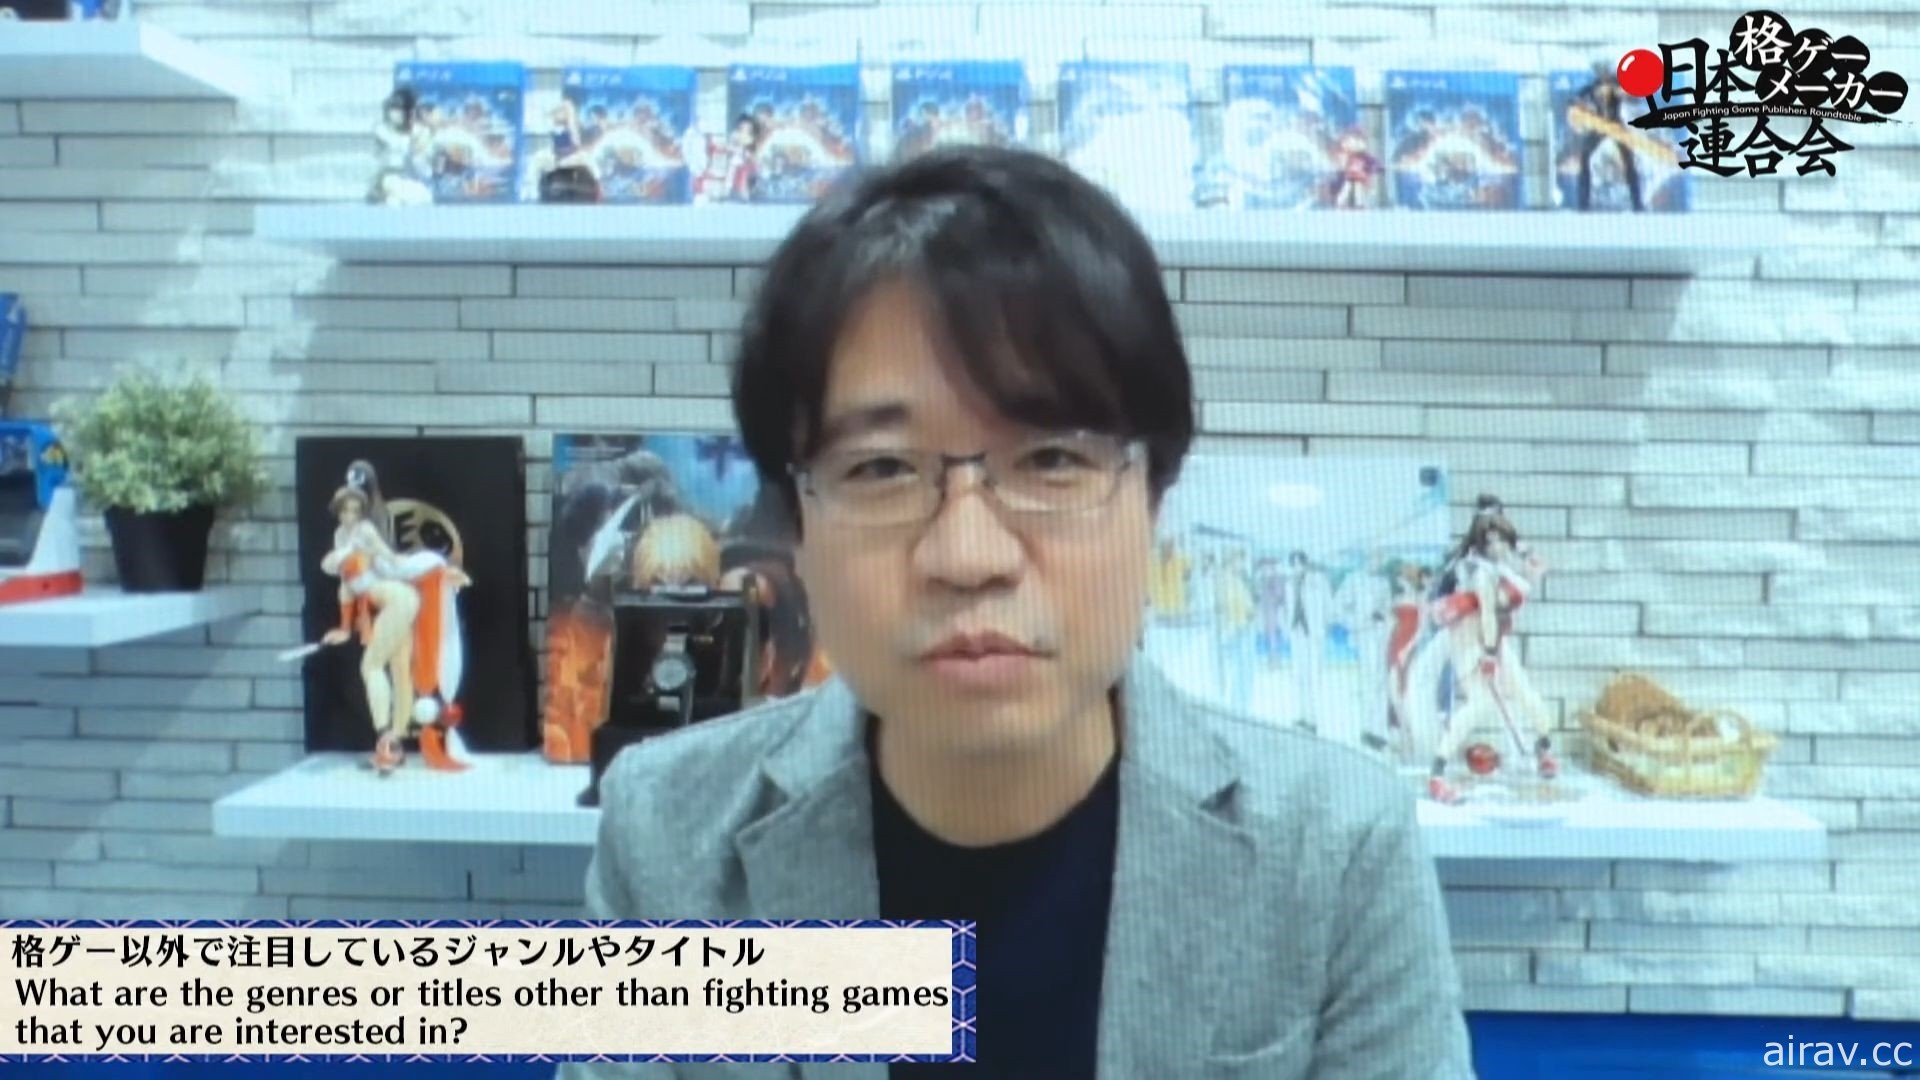 第三回“日本格斗游戏厂商联合会”报导 谈论多项议题并展示《铁拳》前身企画书等秘辛